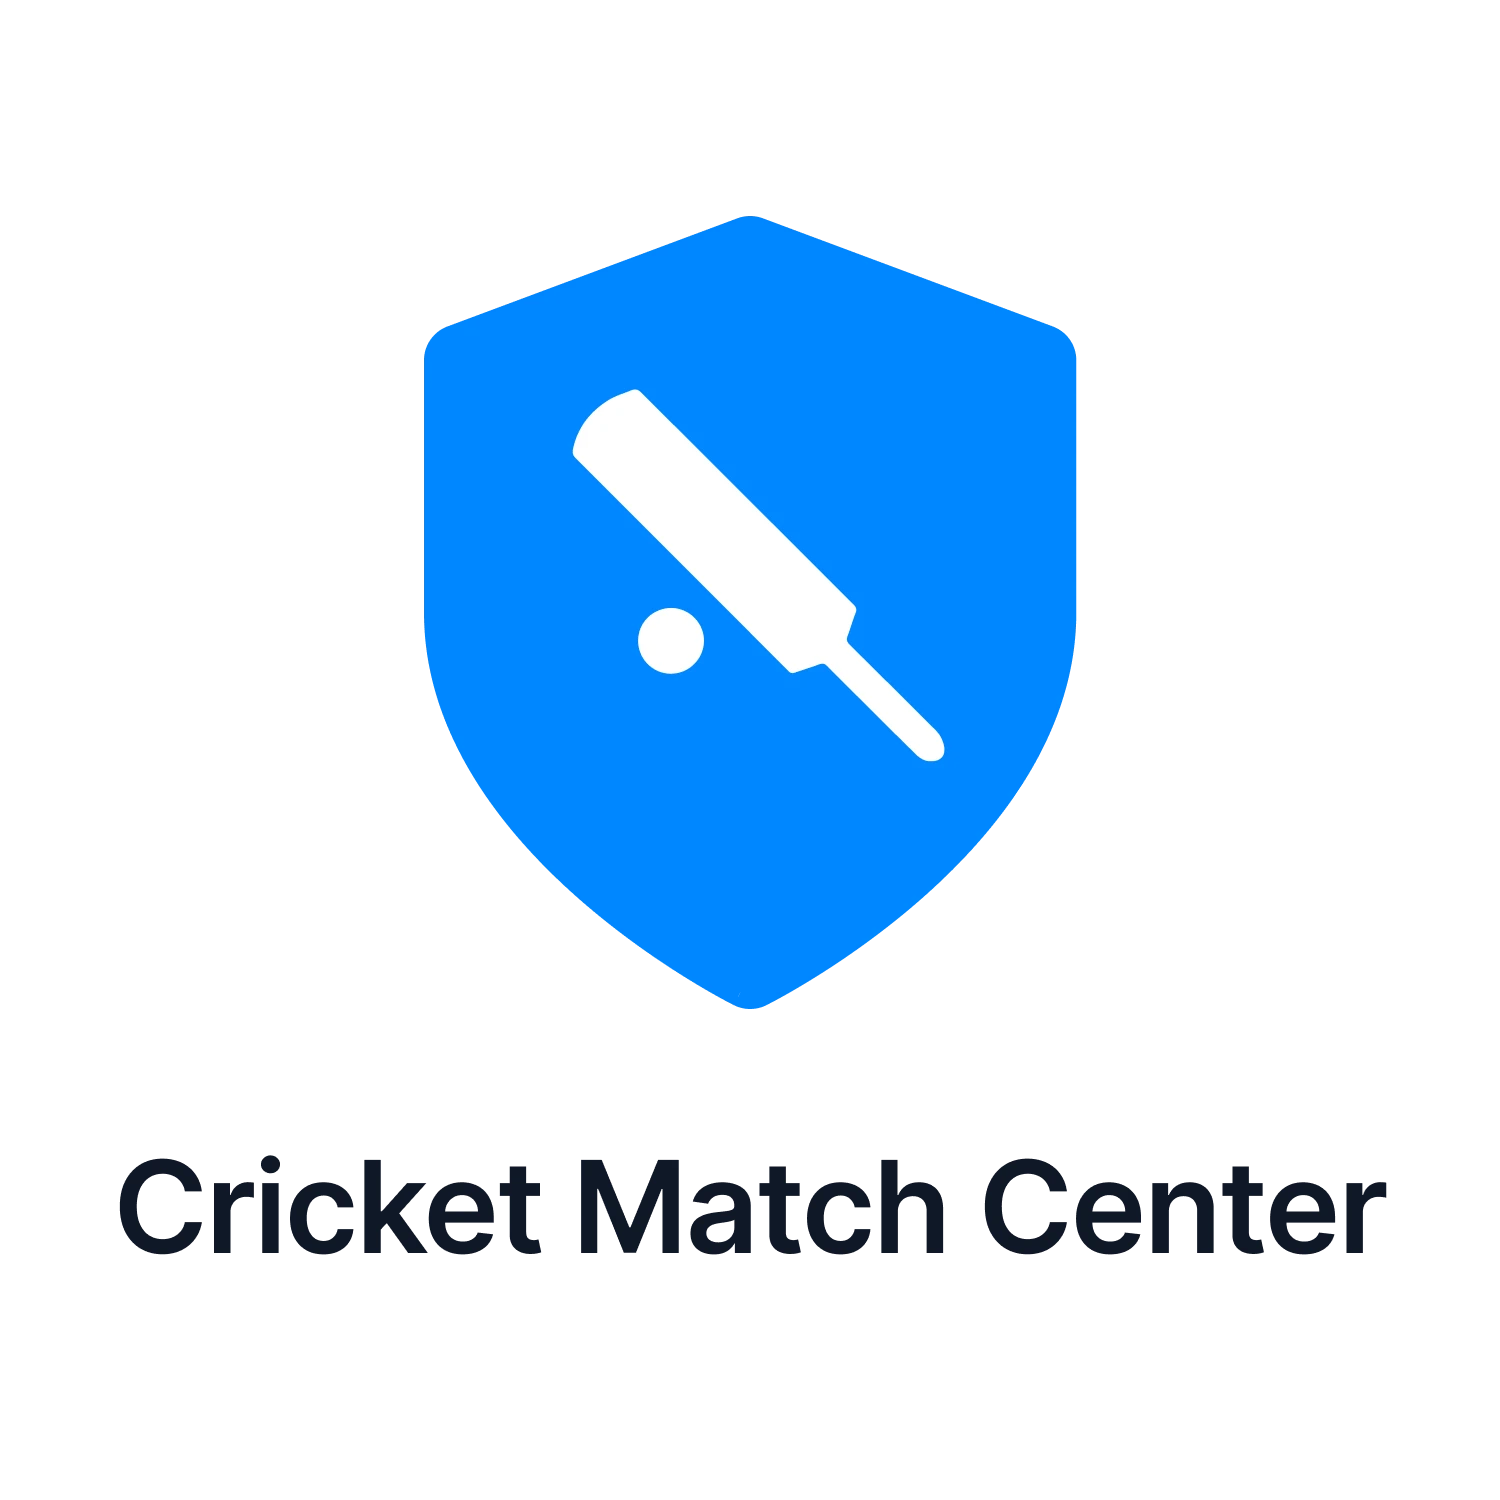 Cricket Match Center.